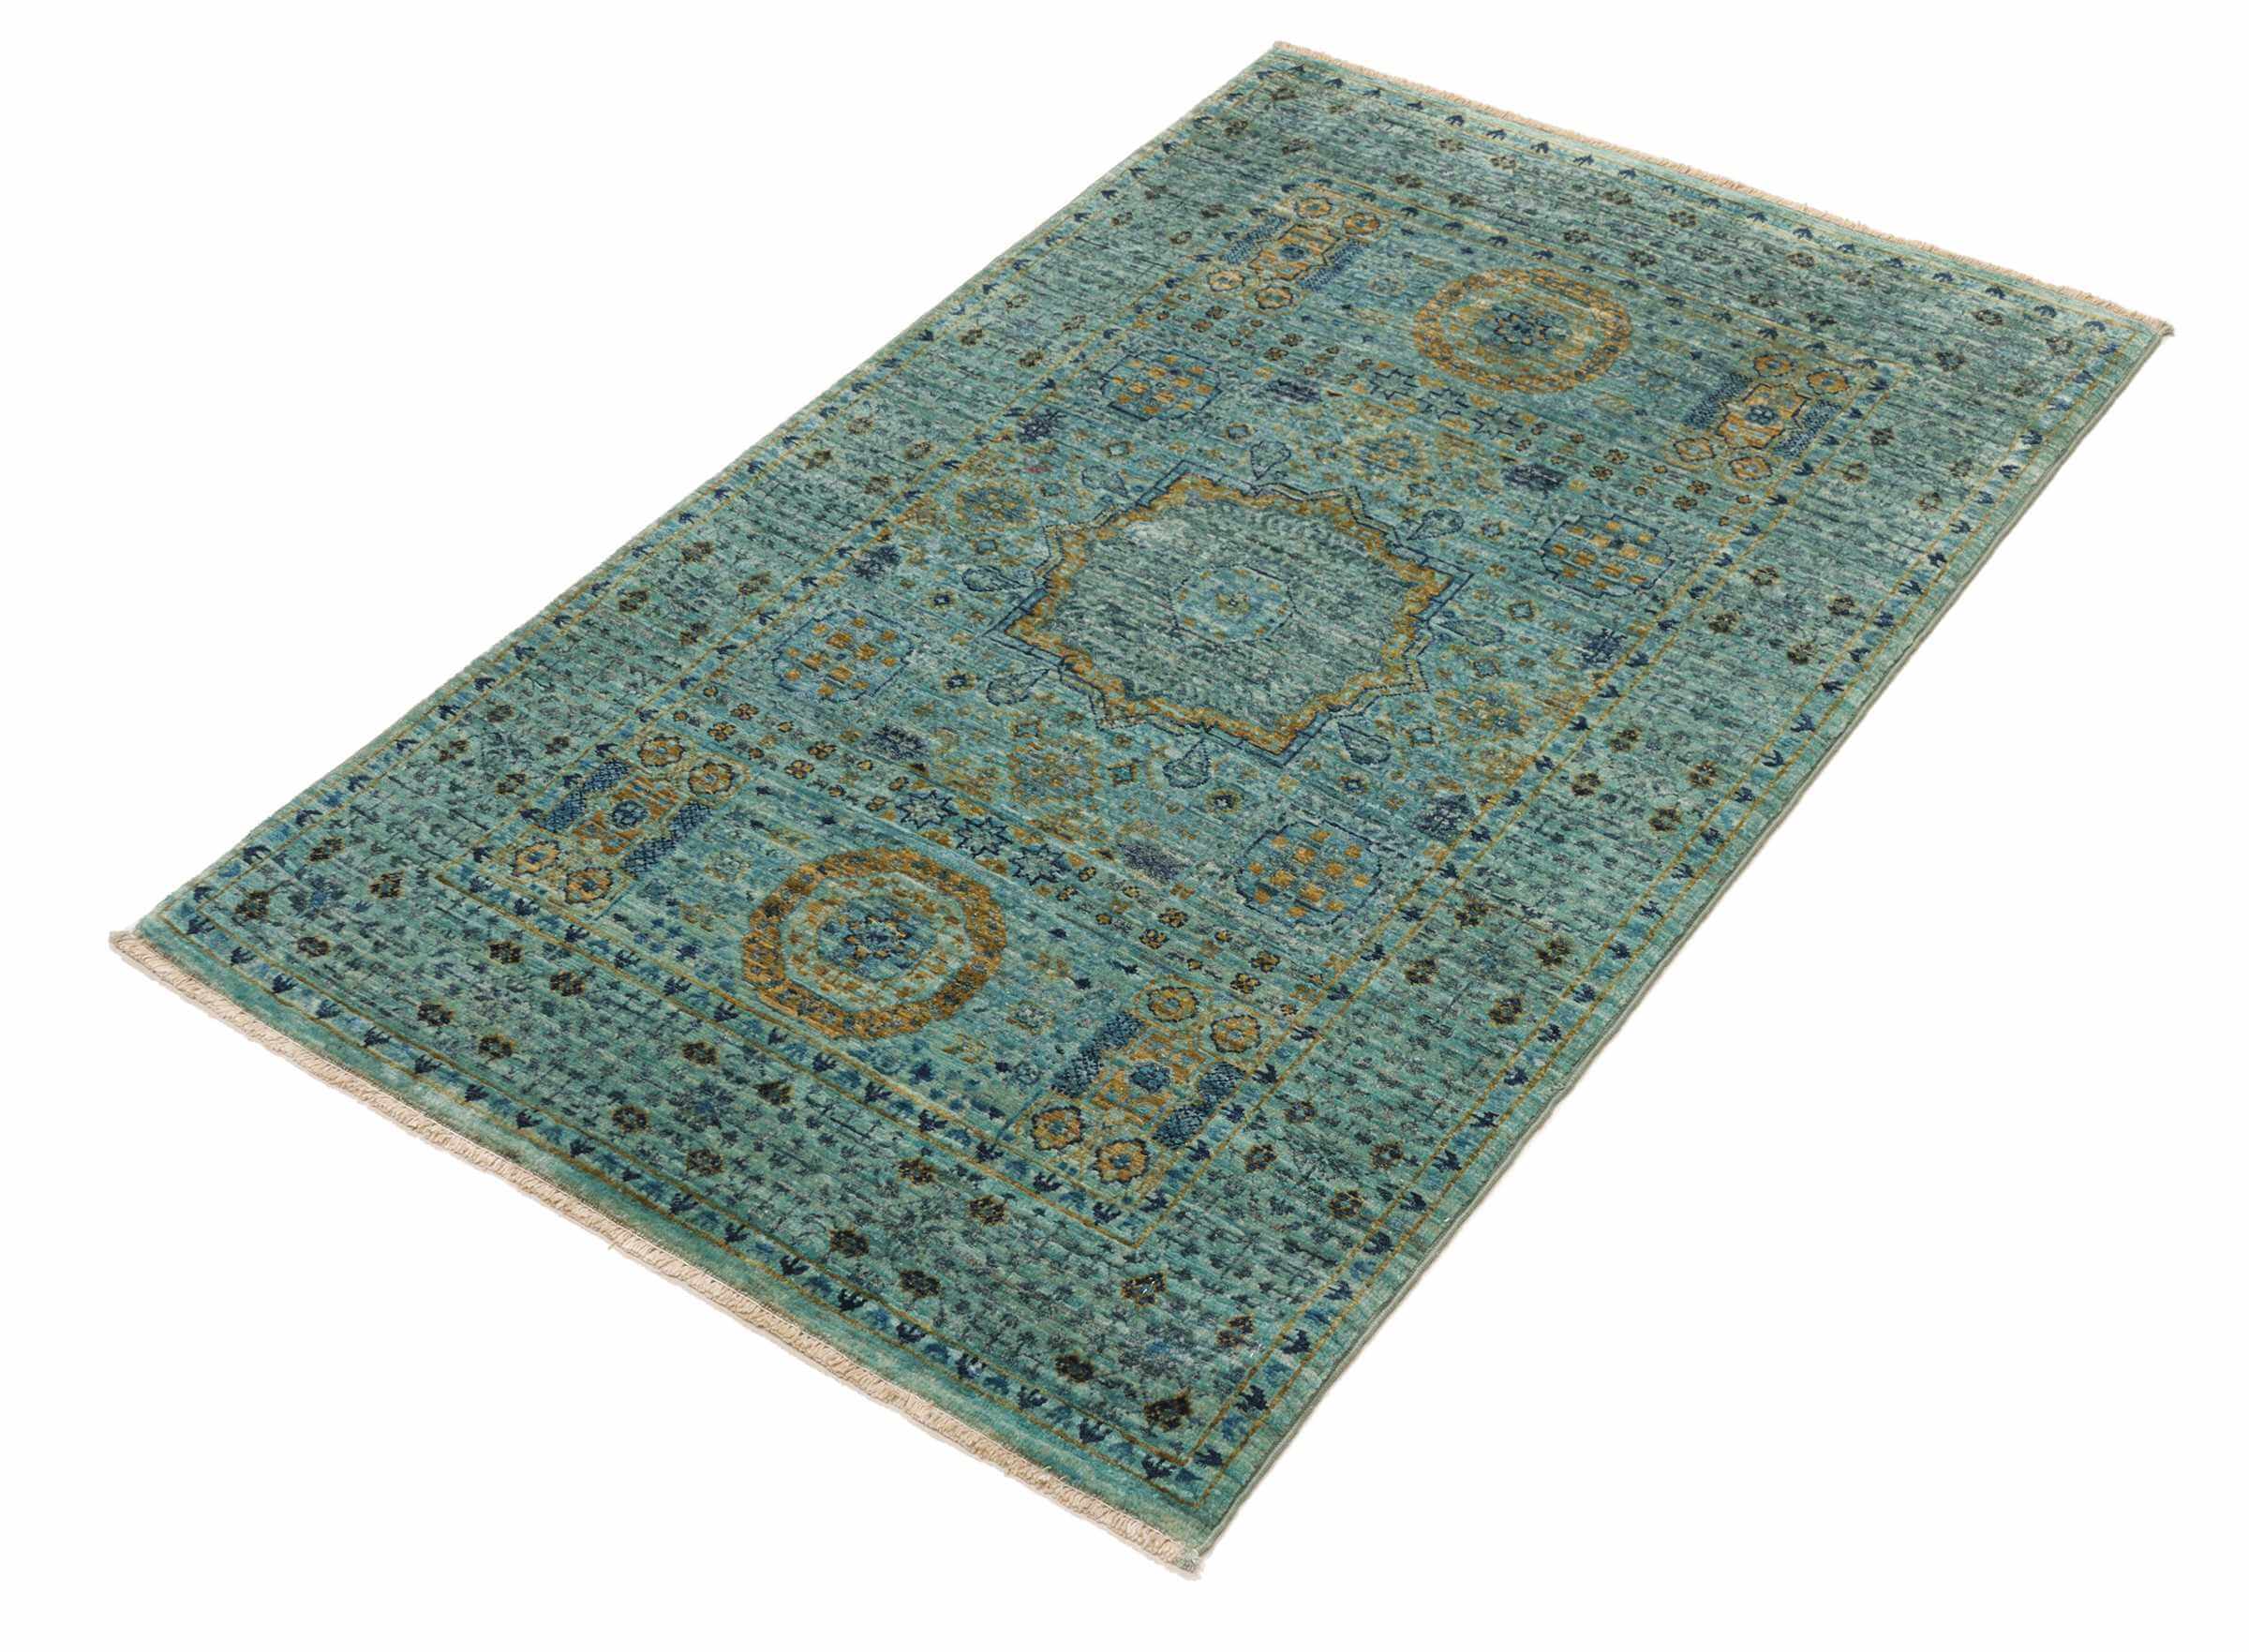 Afghan-Teppich Mamlouk, turquoise, handgeknüpft, Schurwolle, 080 x 124 cm, Schrägansicht